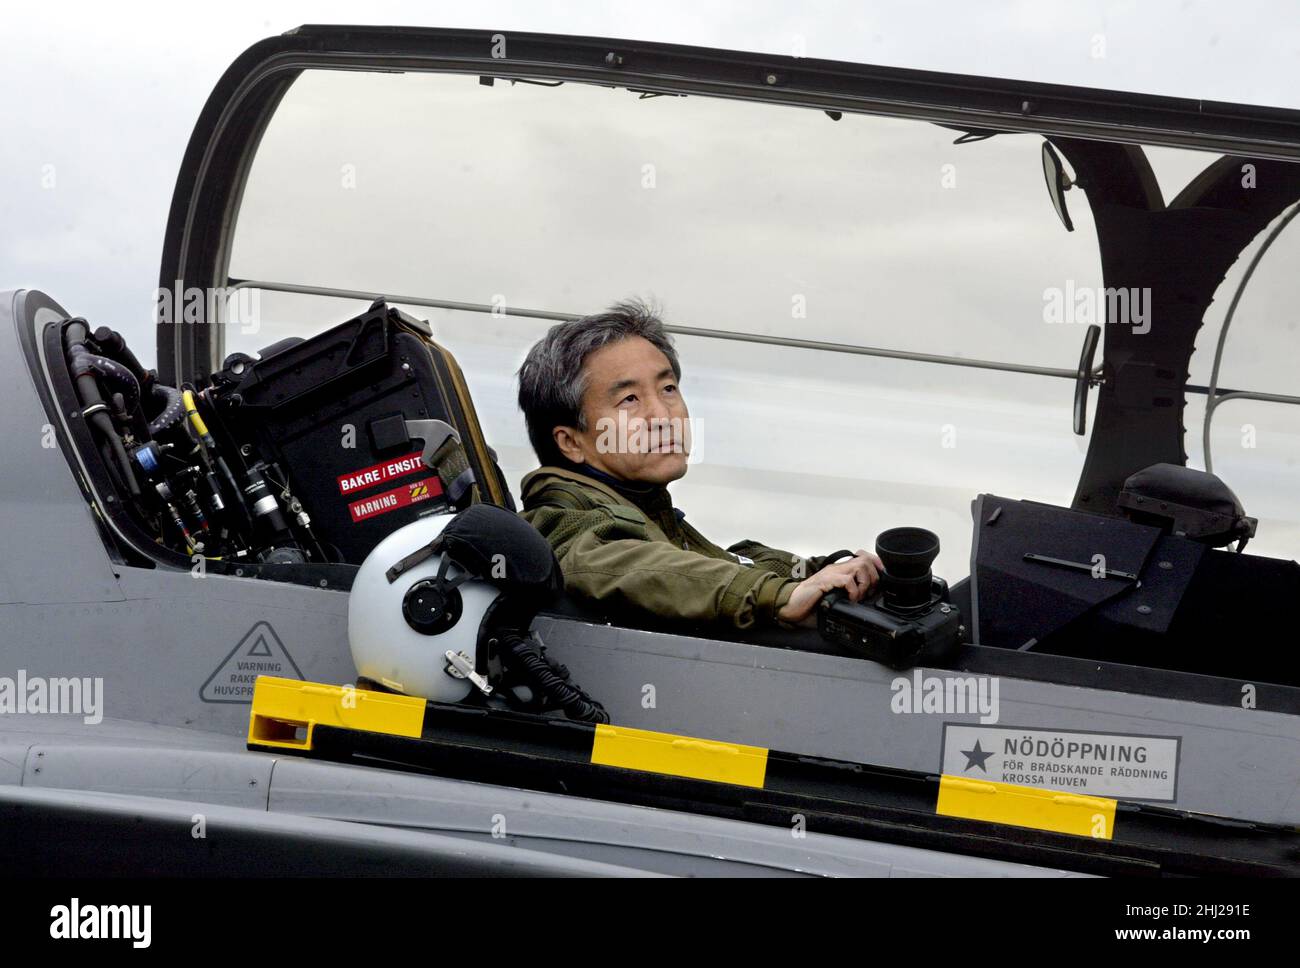 Katsuhiko 'Katsu' Tokunaga (徳永克彦, tokunaga katsuhiko) ist ein japanischer Fotograf für die Militärluftfahrt, der sich auf Luft-zu-Luft-Fotografie spezialisiert hat. Hier abgebildet auf dem Luftwaffenstützpunkt Såtenäs in der Nähe der Stadt Lidköping, Schweden. Stockfoto